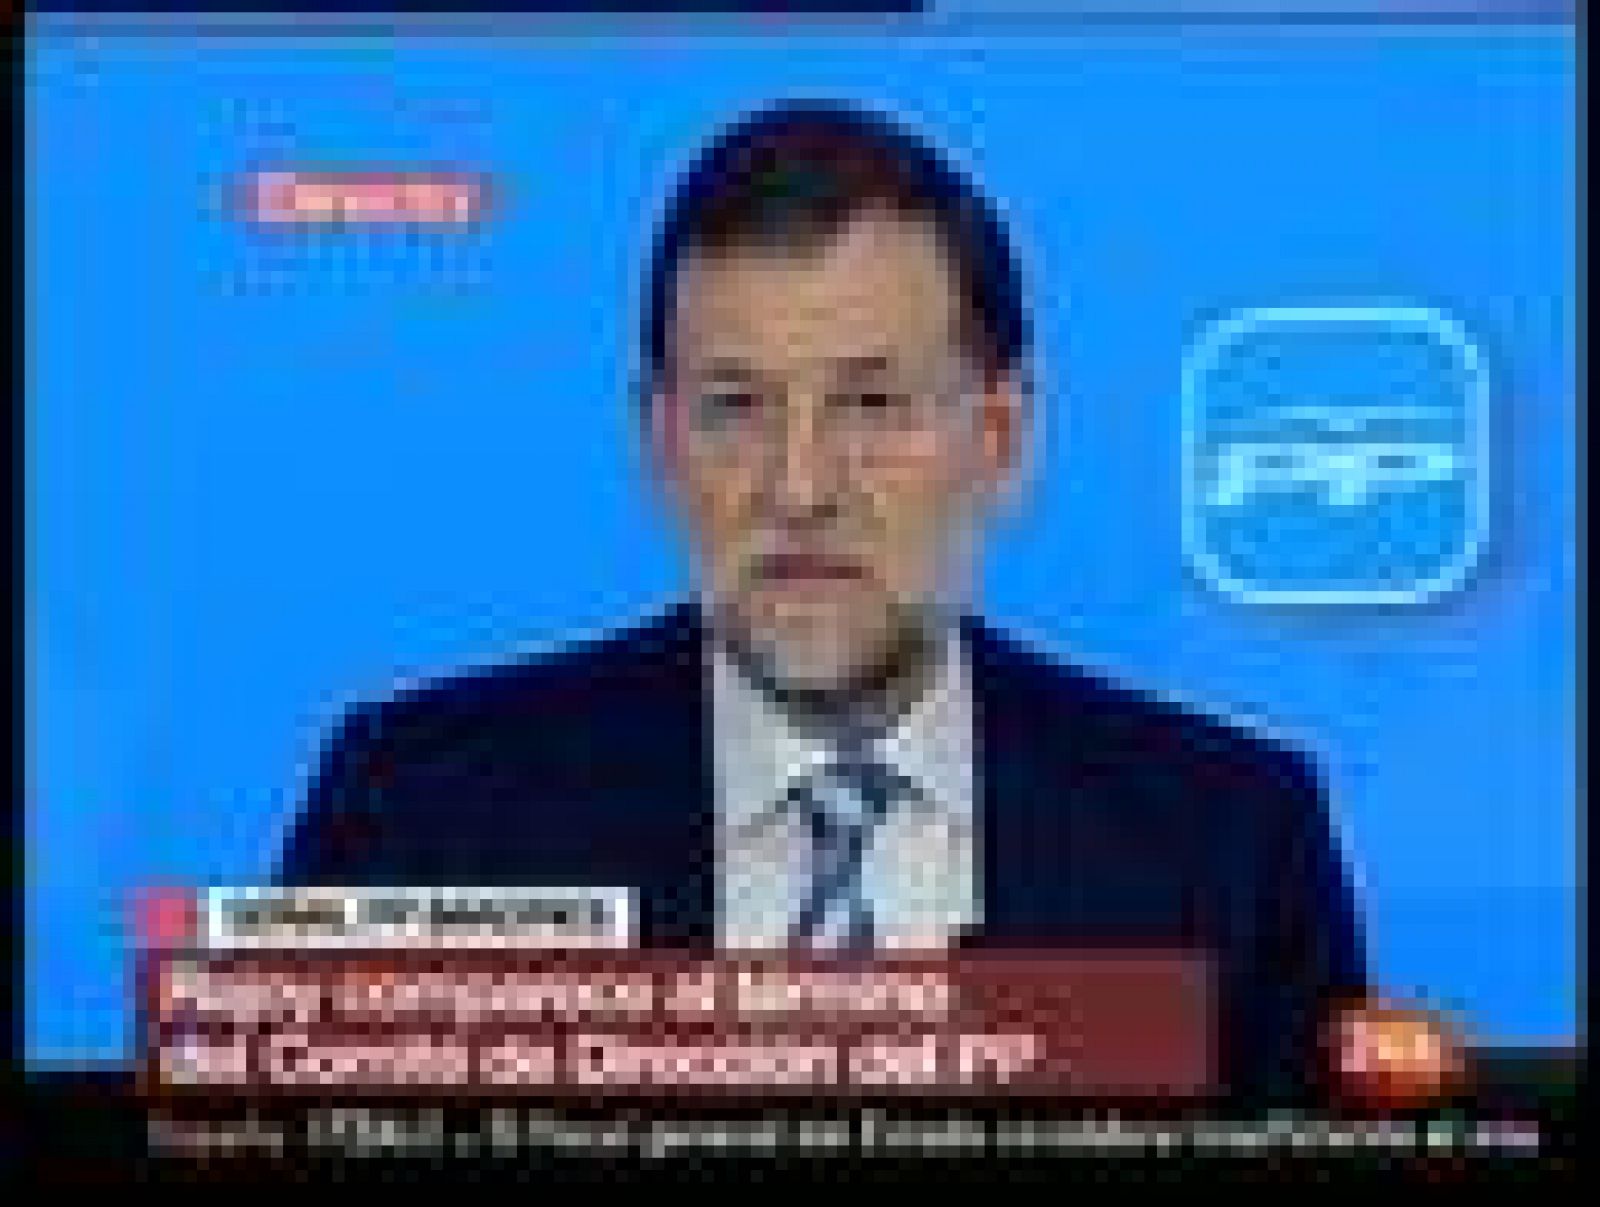 El presidente del PP, Mariano Rajoy, considera que el "hartazgo" que existe en la sociedad hacia las políticas de Zapatero ha influido en el resultado de las elecciones catalanas, donde los electores han elegido a CiU para que los gobierne y ha castigado al tripartito con la fuerte caida en los comicios de PSC y ERC. "Los ciudadanos castigan, y hacen bien, a los malos gobiernos", ha dicho, para añadir: "y el tripartito ha sido un mal gobierno". Además, Rajoy considera que el PSC ha ido "en contra de sus propios votantes, disfrazándose de pseudonacionalismo".